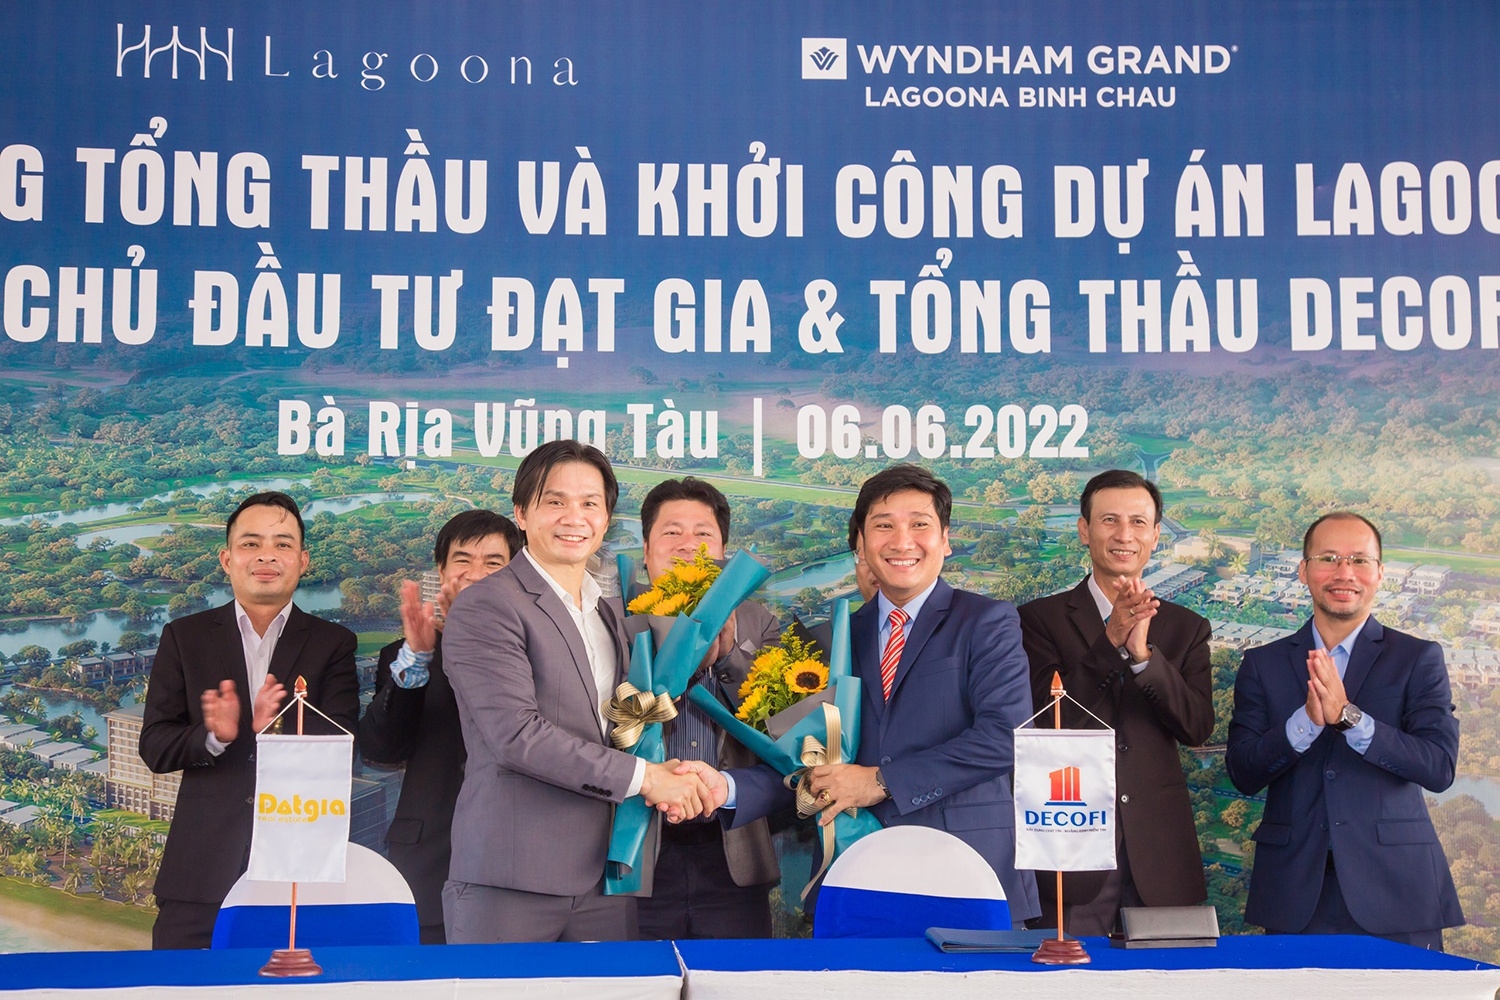 Đạt Gia khởi công giai đoạn 2 dự án Wyndham Grand Lagoona Bình Châu